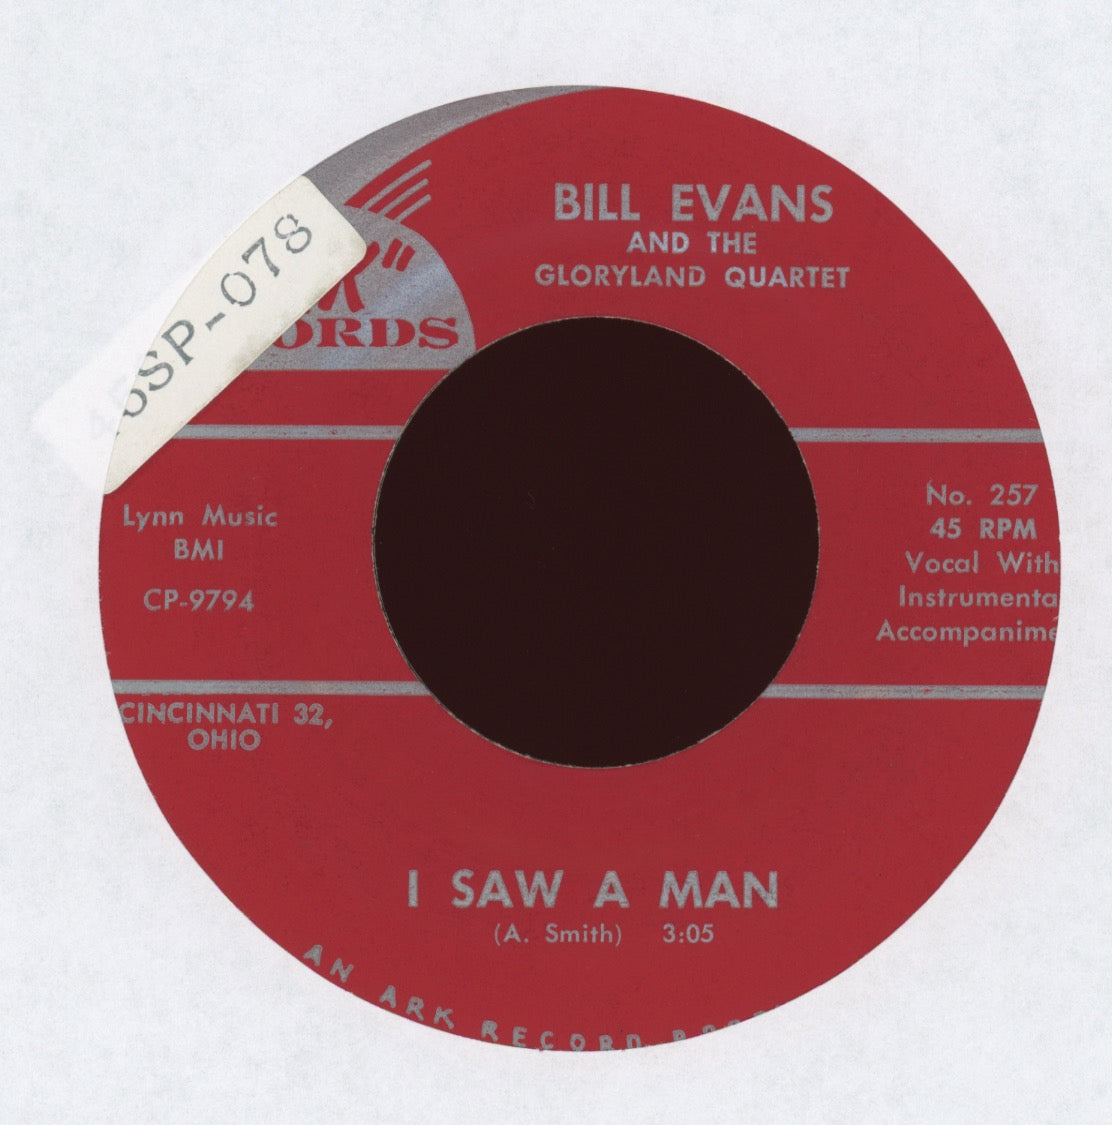 Bill Evans - This Is Jesus on Ark